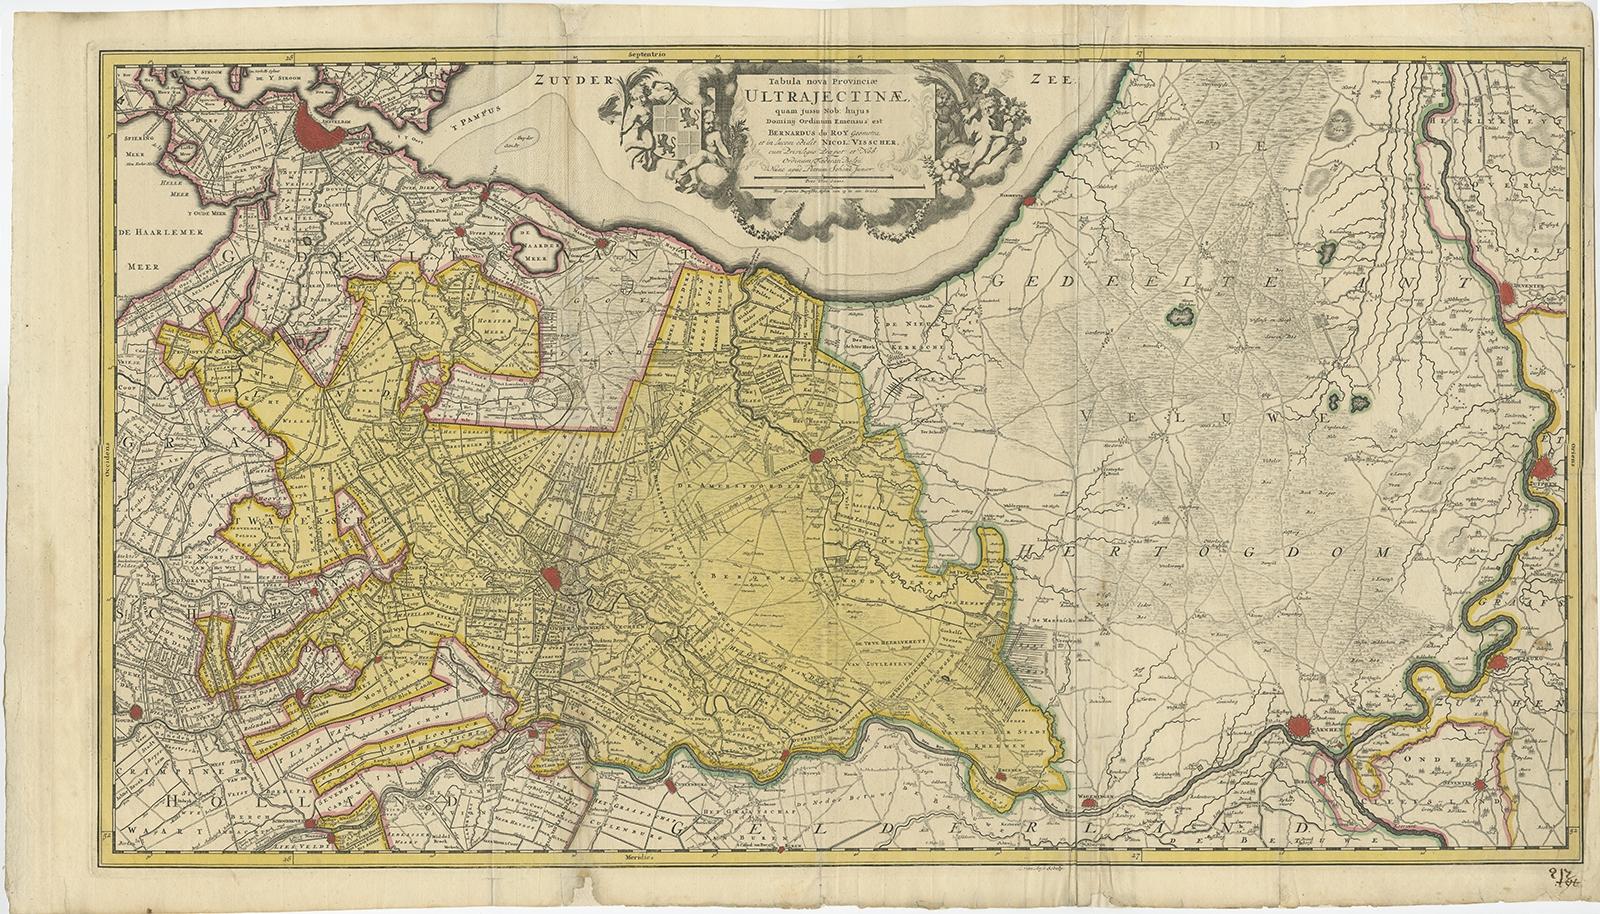 Antique map titled ‘Tabula Nova Provinciae Ultrajectinae (..)’. 

Original antique map of the province of Utrecht, the Netherlands. It shows the region of Amsterdam, Utrecht, Gouda, Schoonhoven, Muiden, Naarden, Amersfoort, Vianen, Culemborg, Wijk